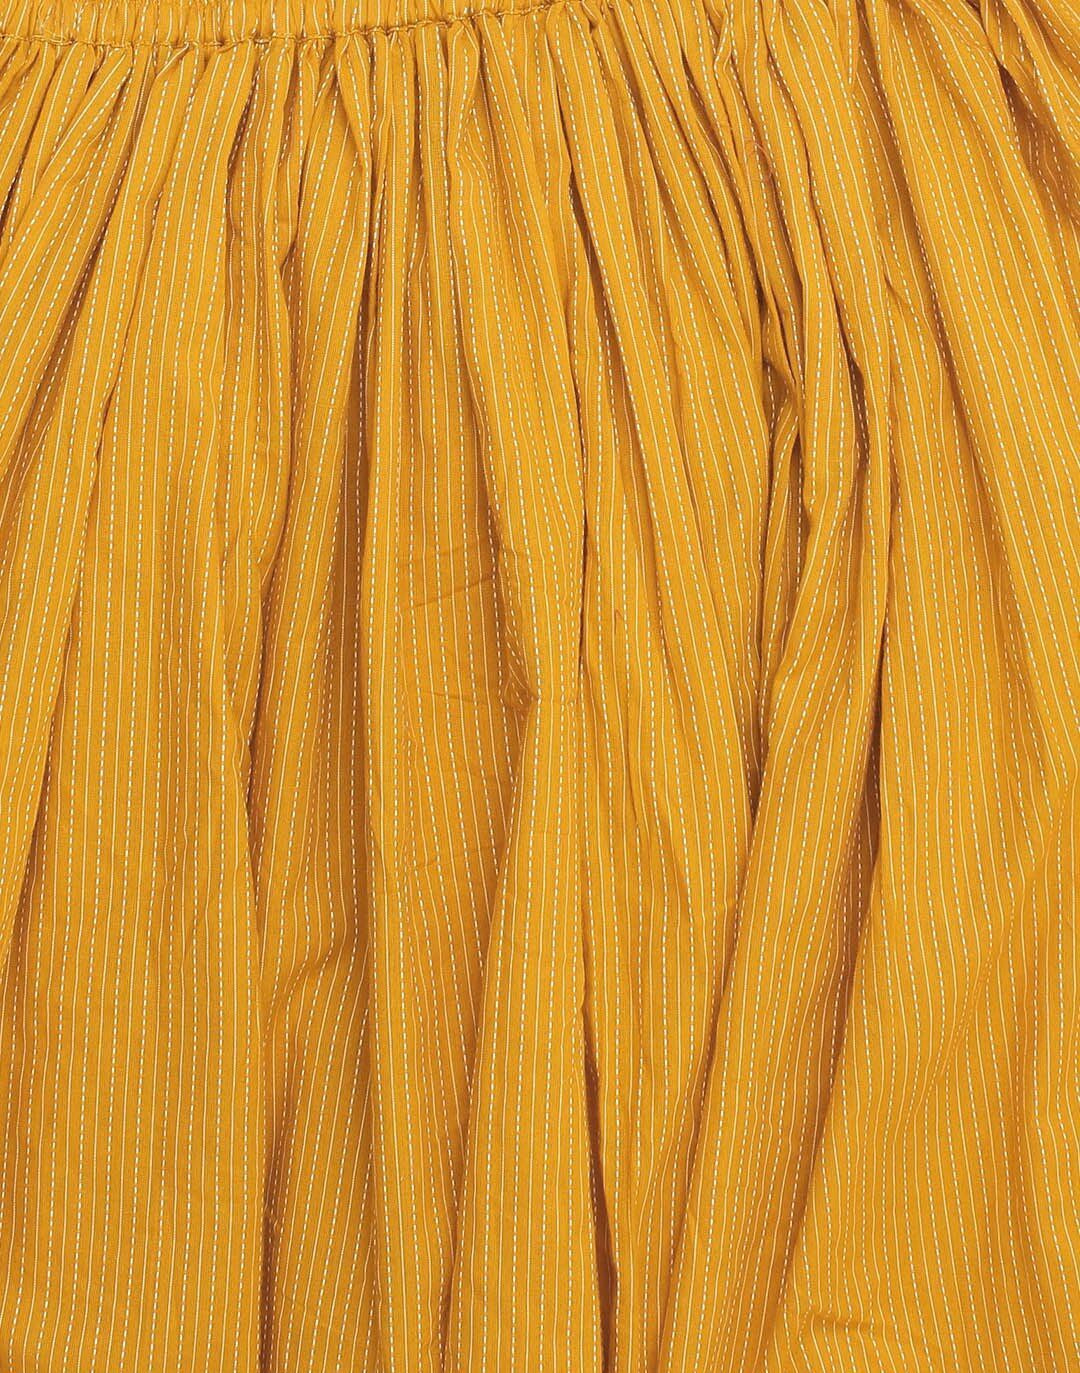 Burgundy & Mustard Yellow Printed Kurta with Skirt